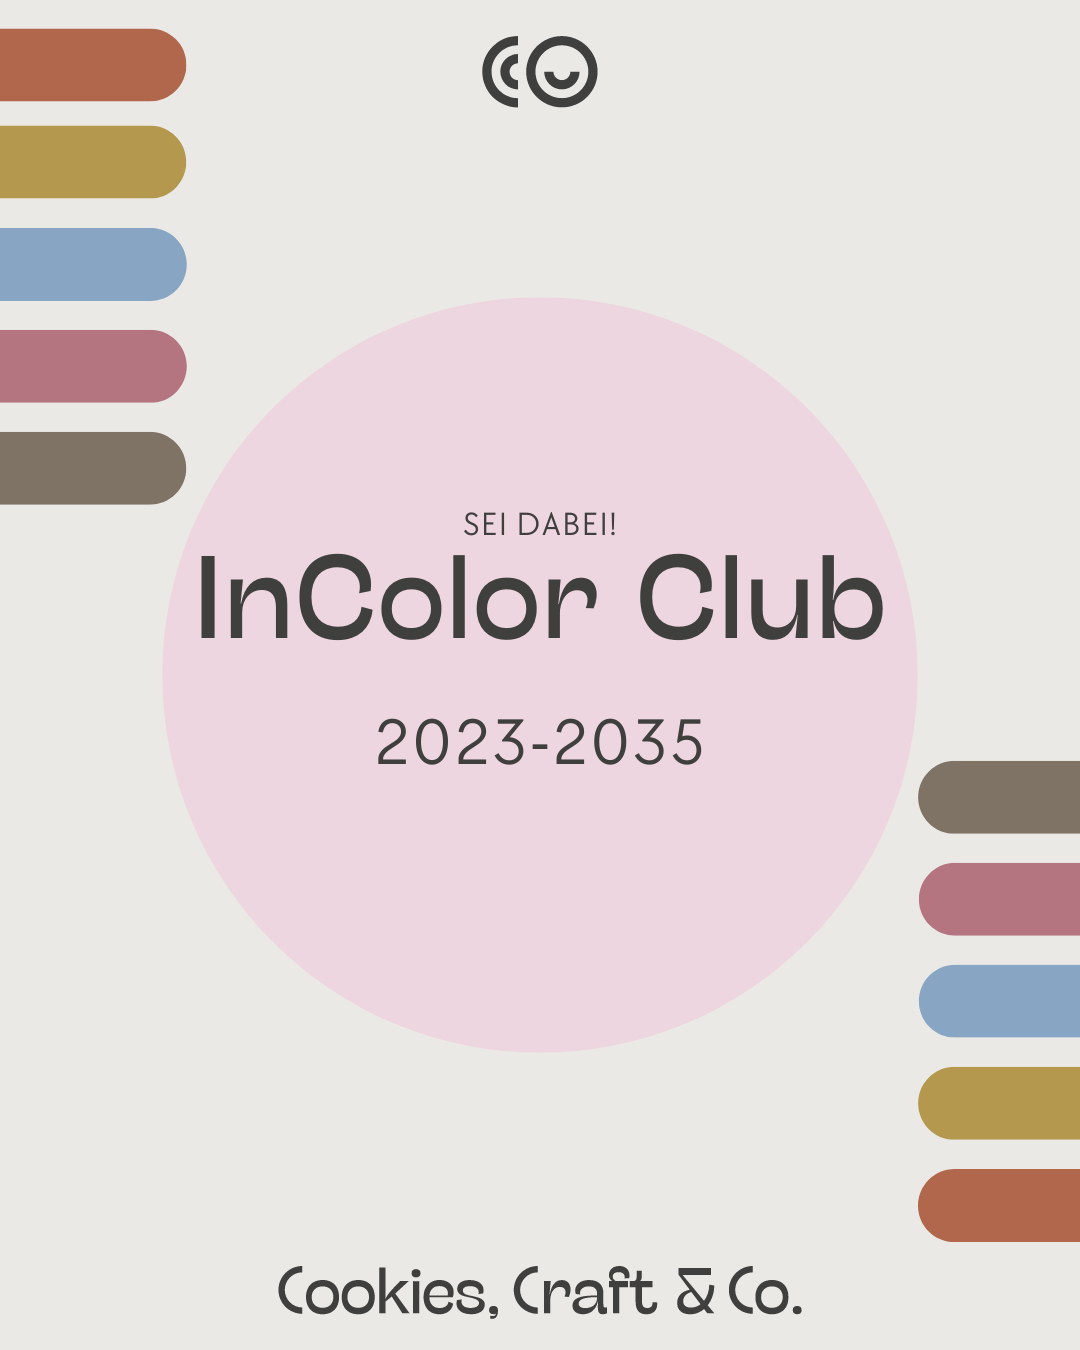 InColor Club - Teilen wir das Farbenglück